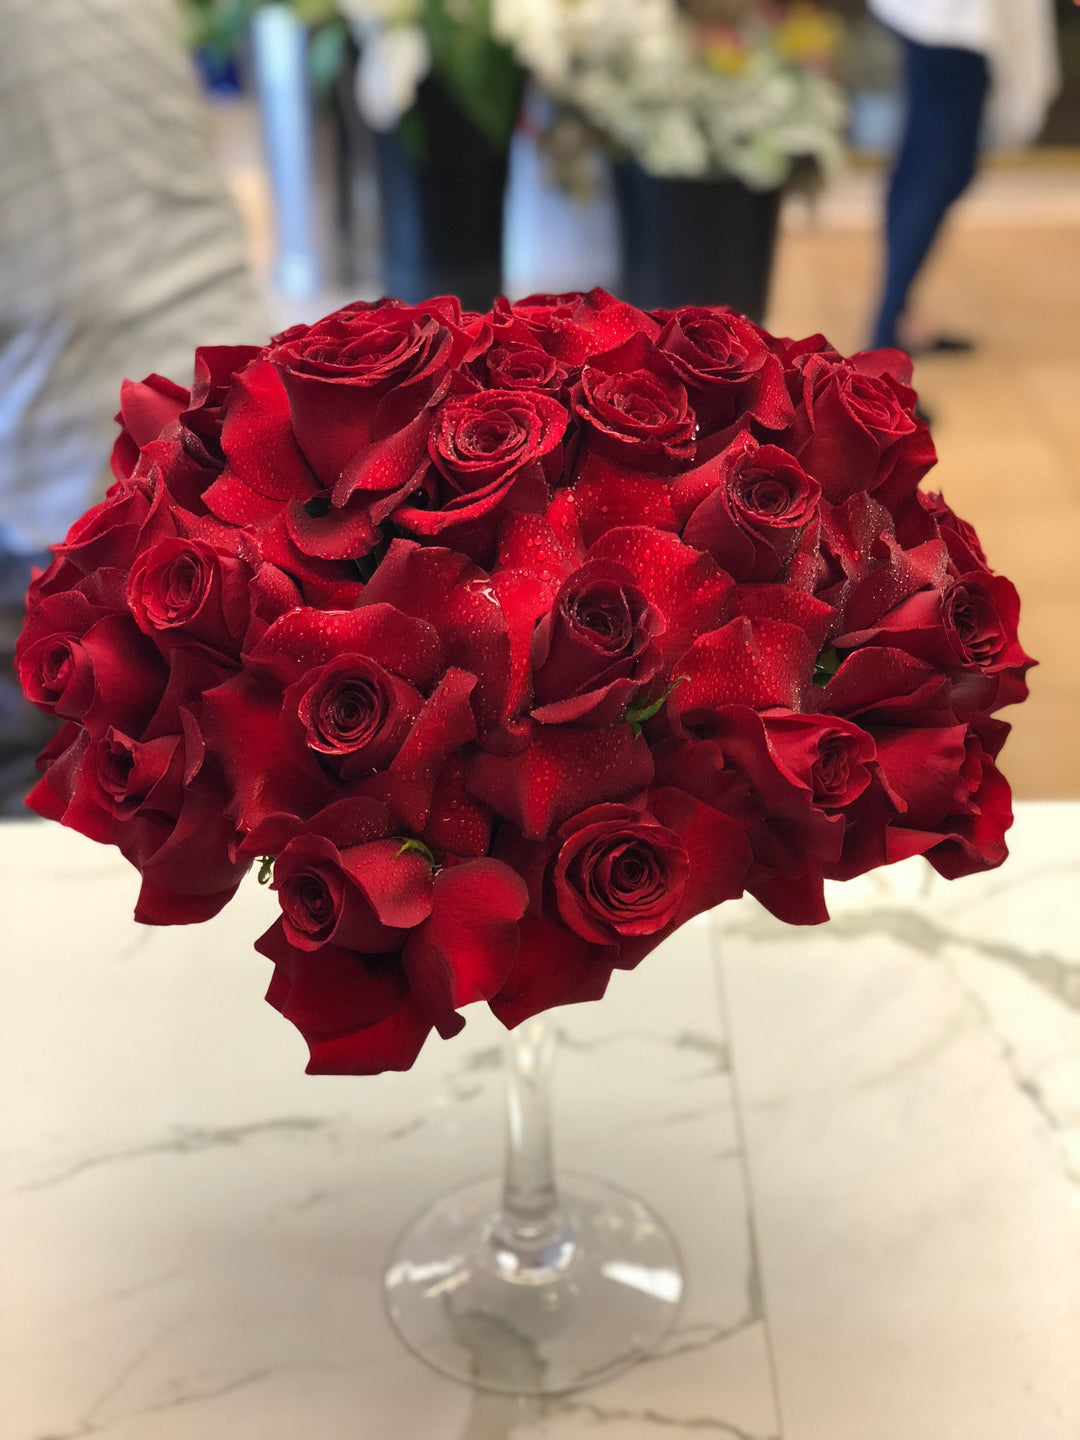 Margarita Roses